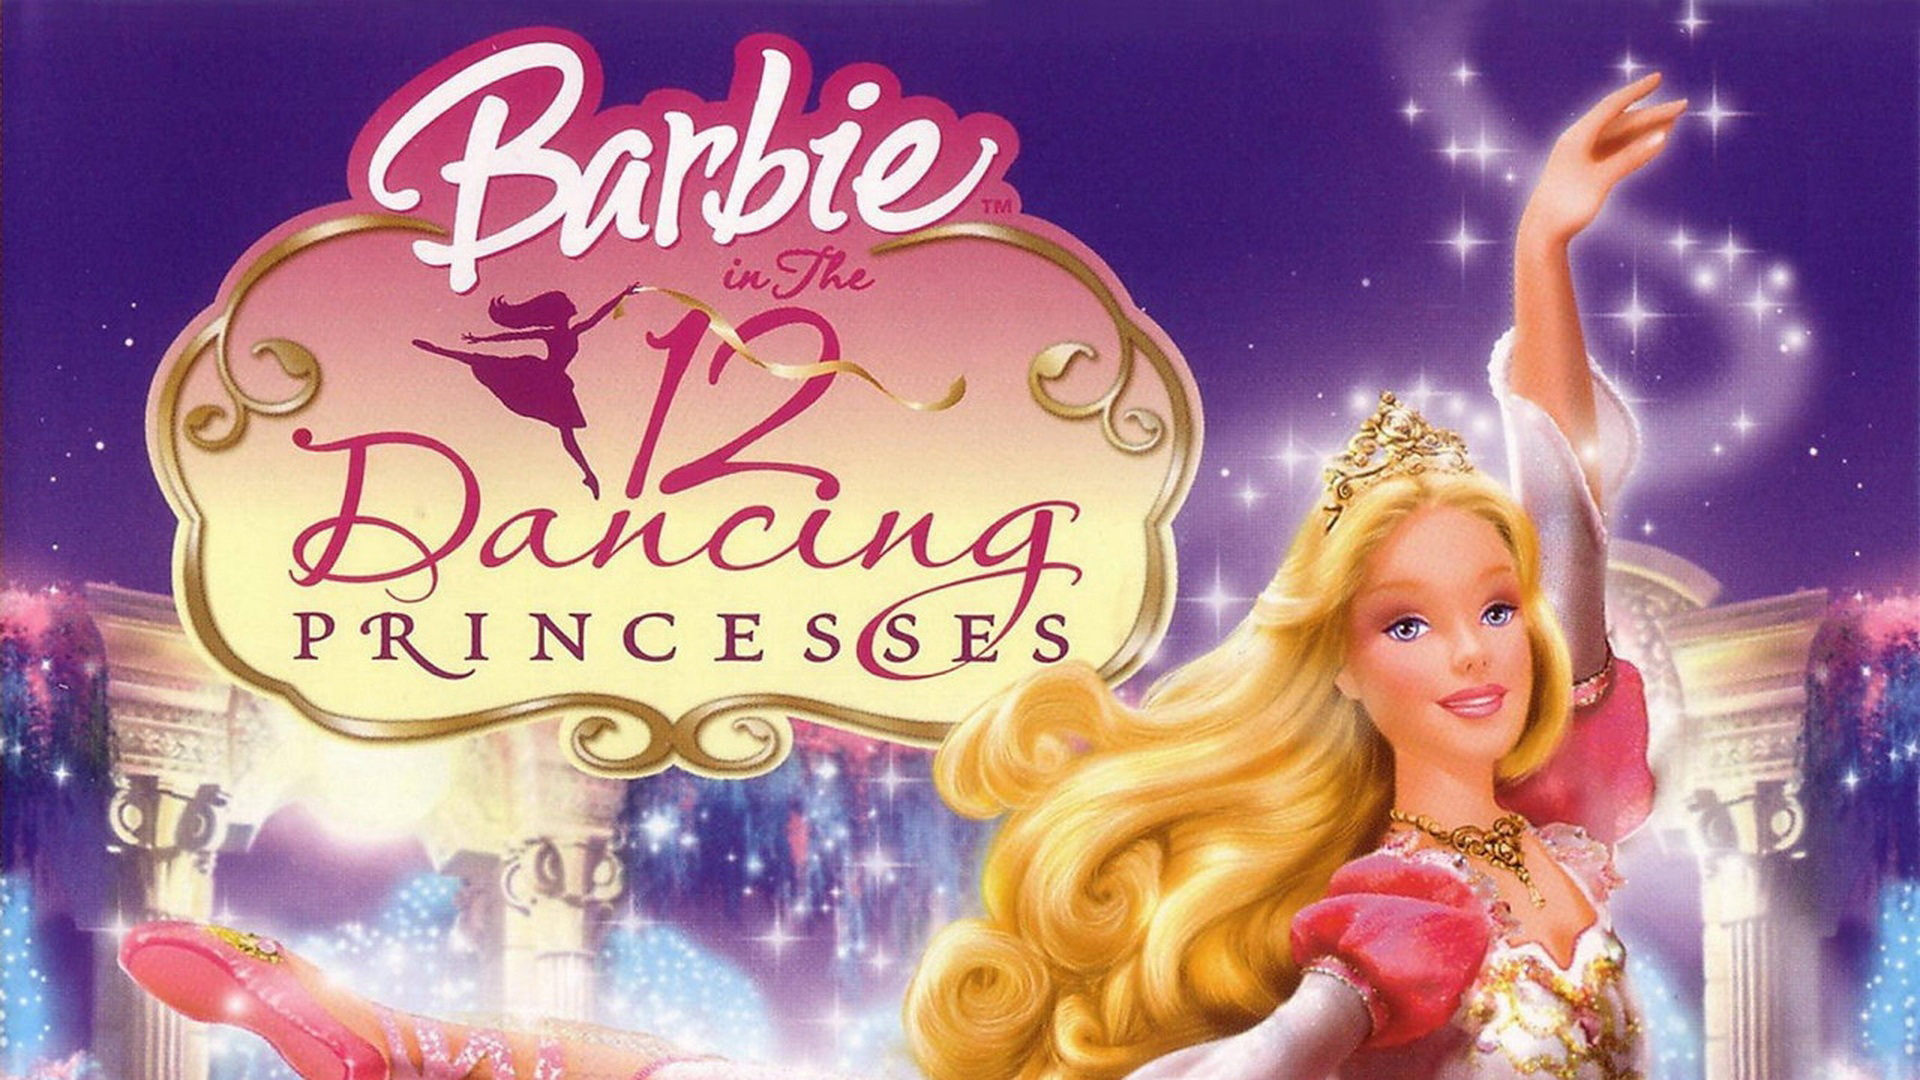 Barbie 12 Dancing Princesses - HD Wallpaper 